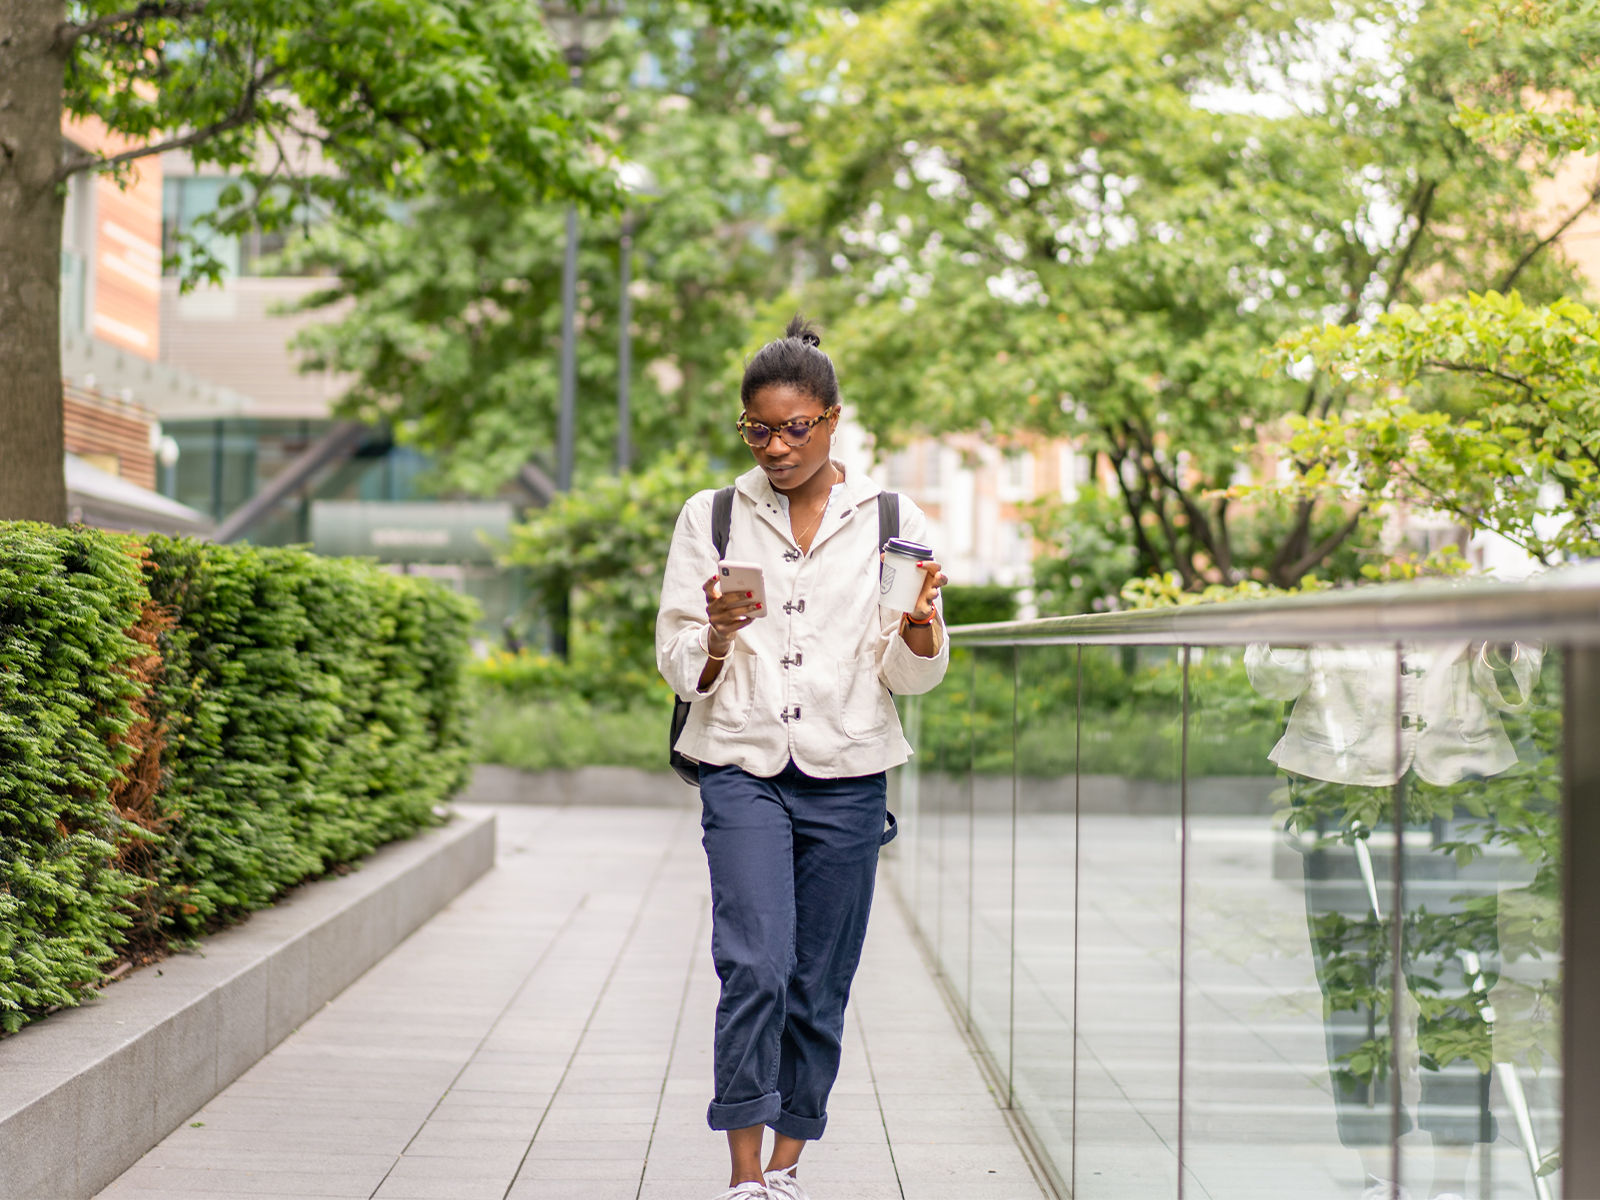 Une étudiante qui marche à l’extérieur sur le campus d’une école, tenant une tasse de café dans une main et regardant son téléphone portable.